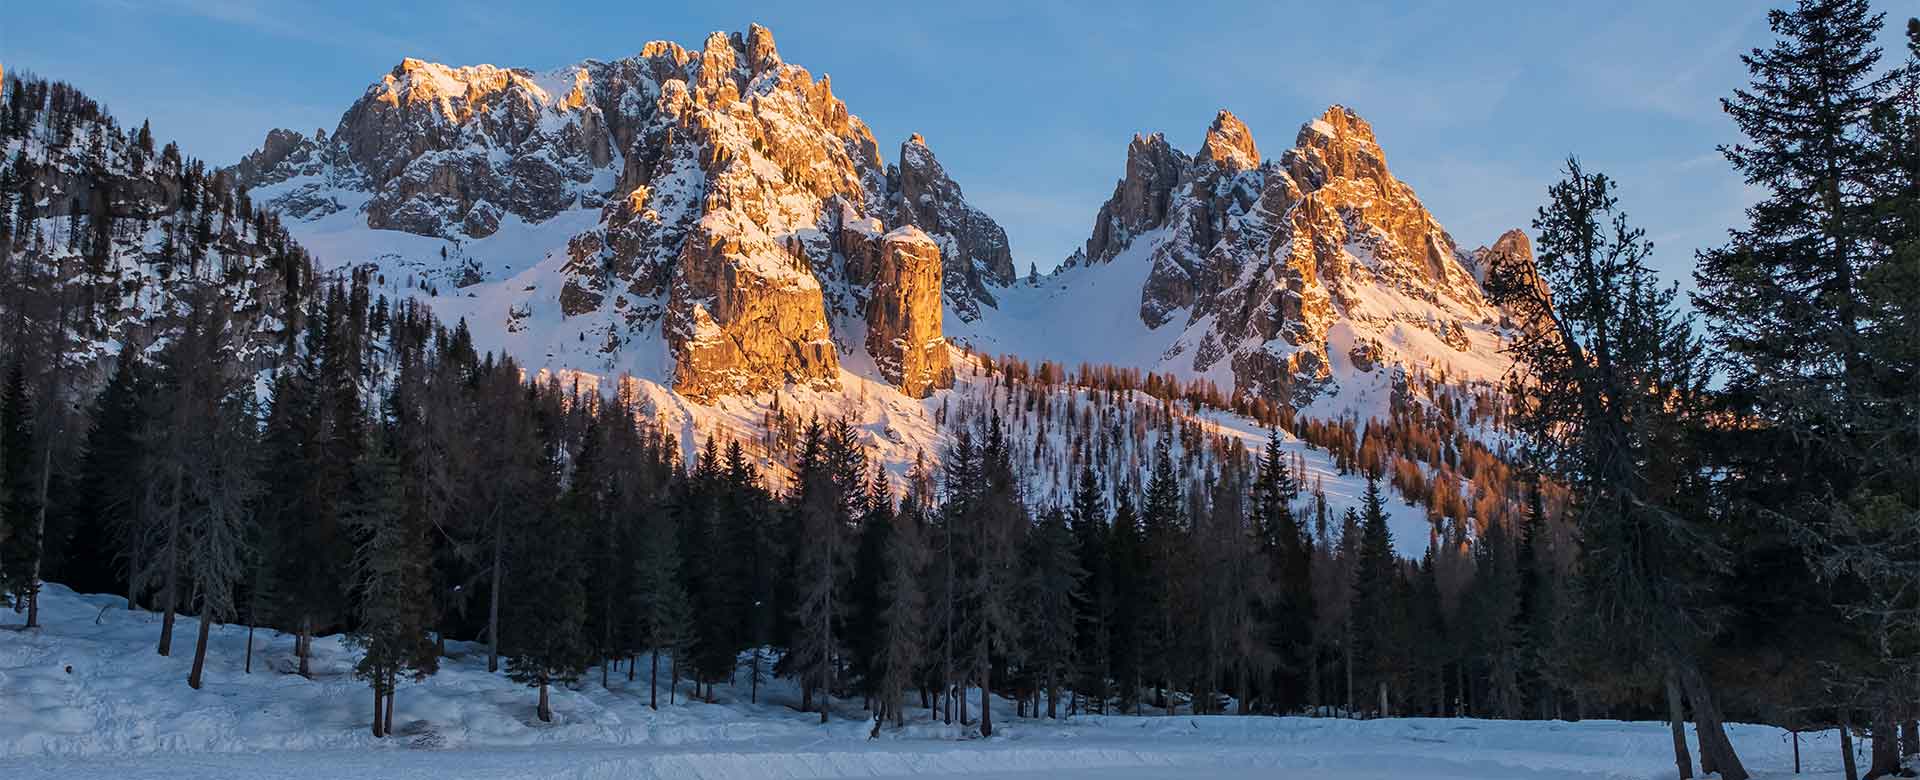 Le Tre Cime di Lavaredo viste dal Lago Antorno nelle Dolomiti di Sesto al tramonto, Veneto